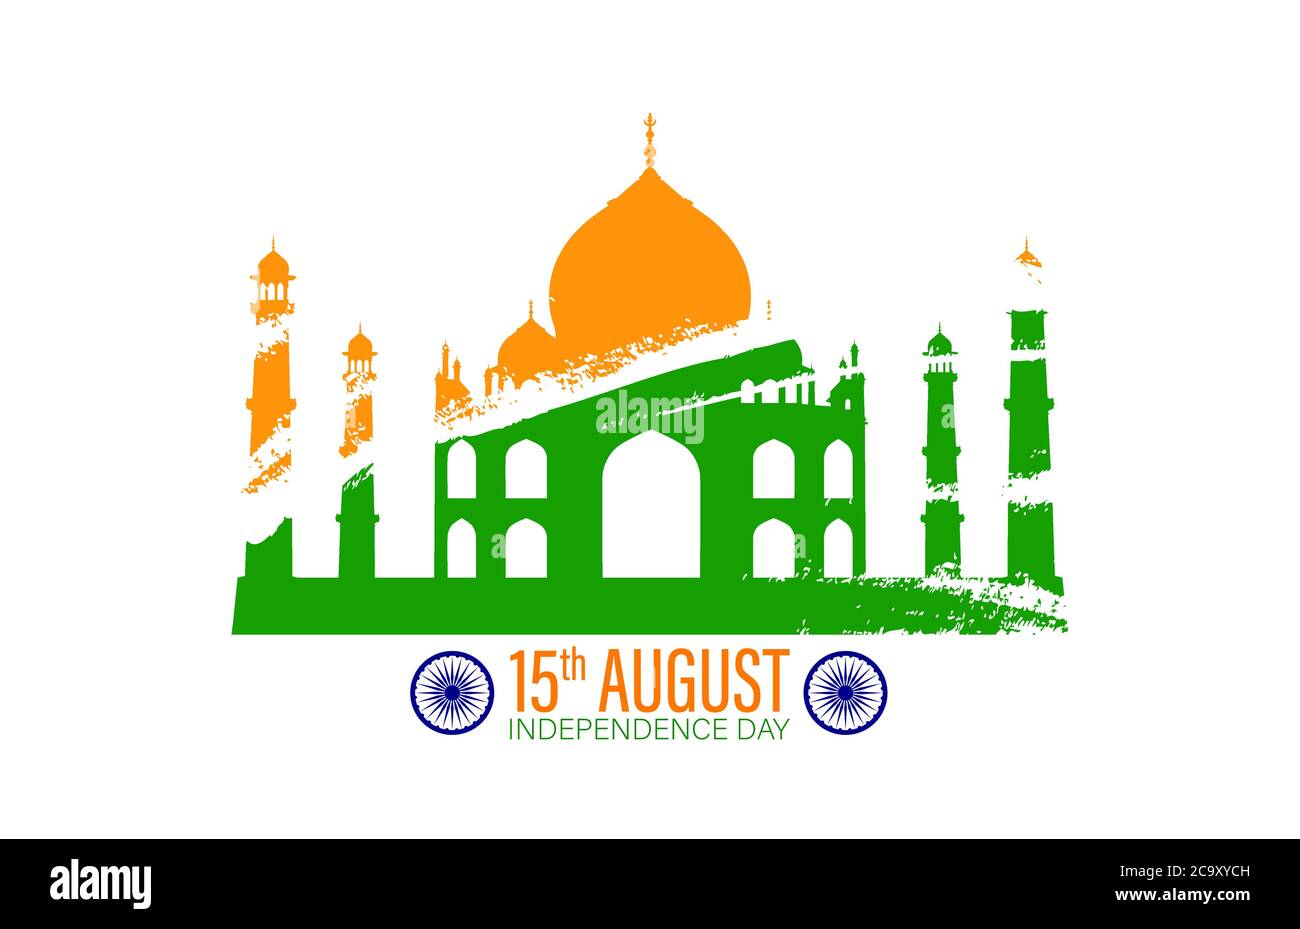 Illustration du célèbre safran du monument indien et fond de pinceau vert pour la célébration de la fête de l'indépendance heureuse le 15 août Illustration de Vecteur